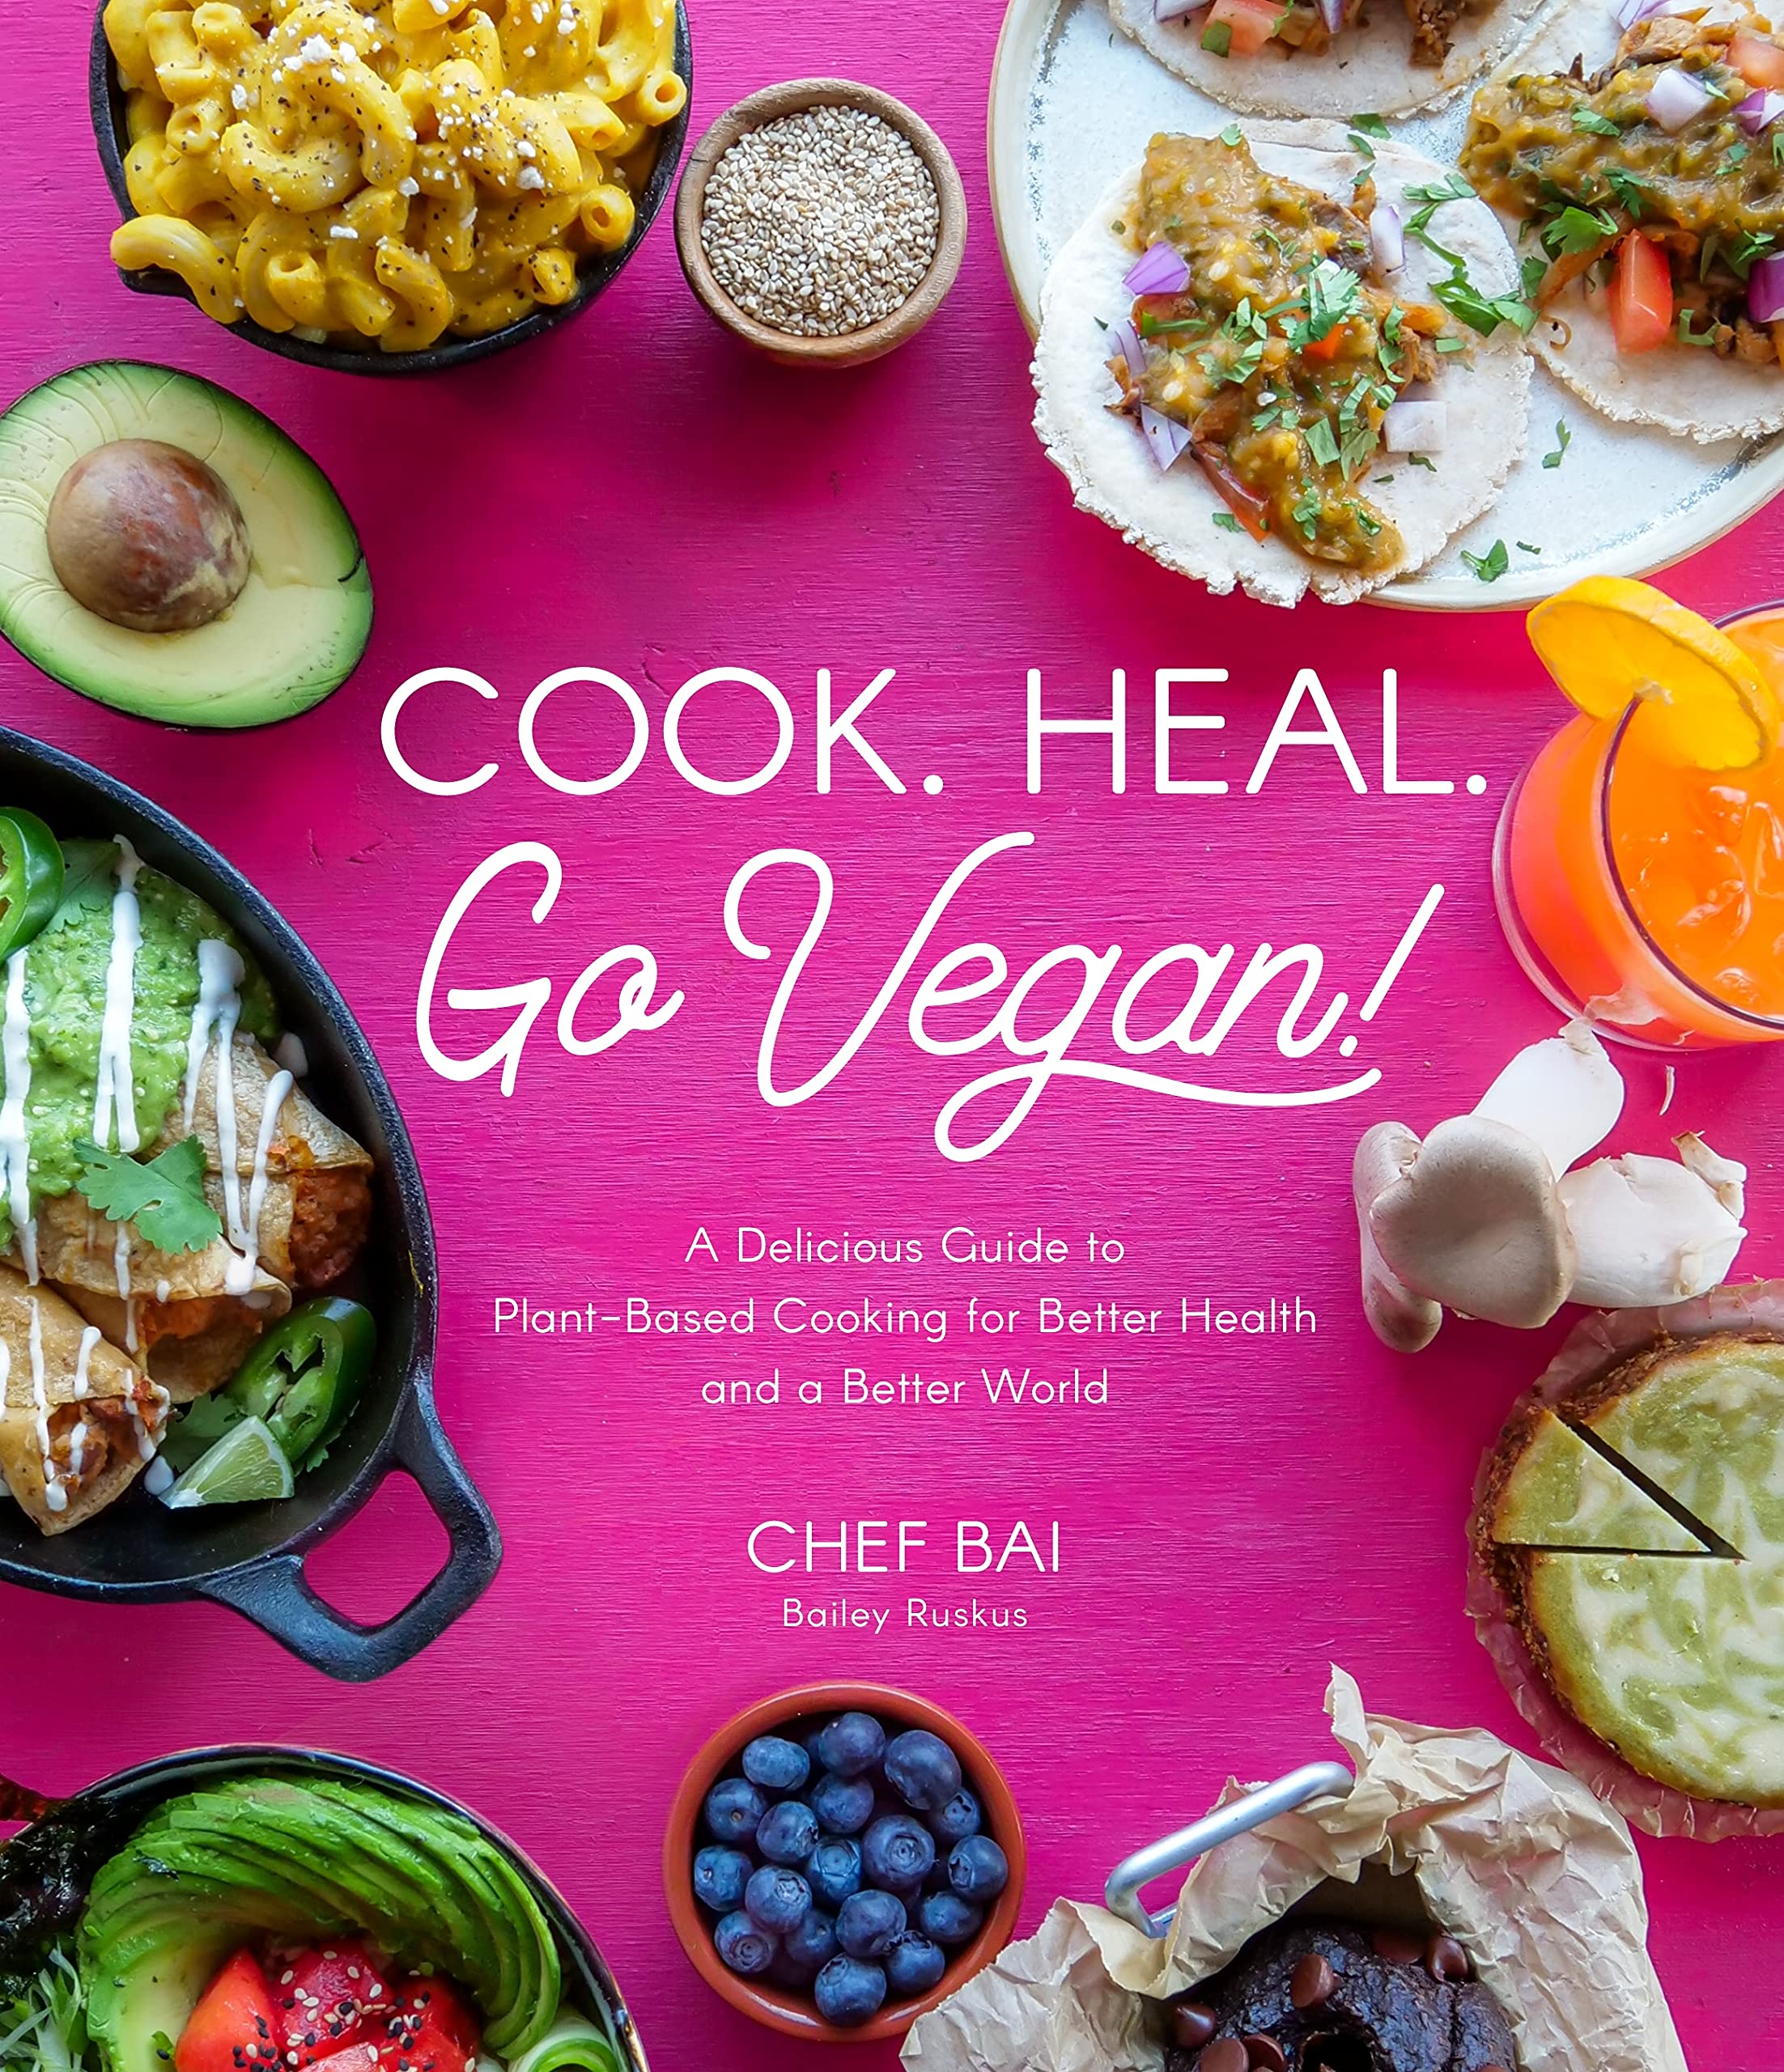 Cook. Heal. Go Vegan!